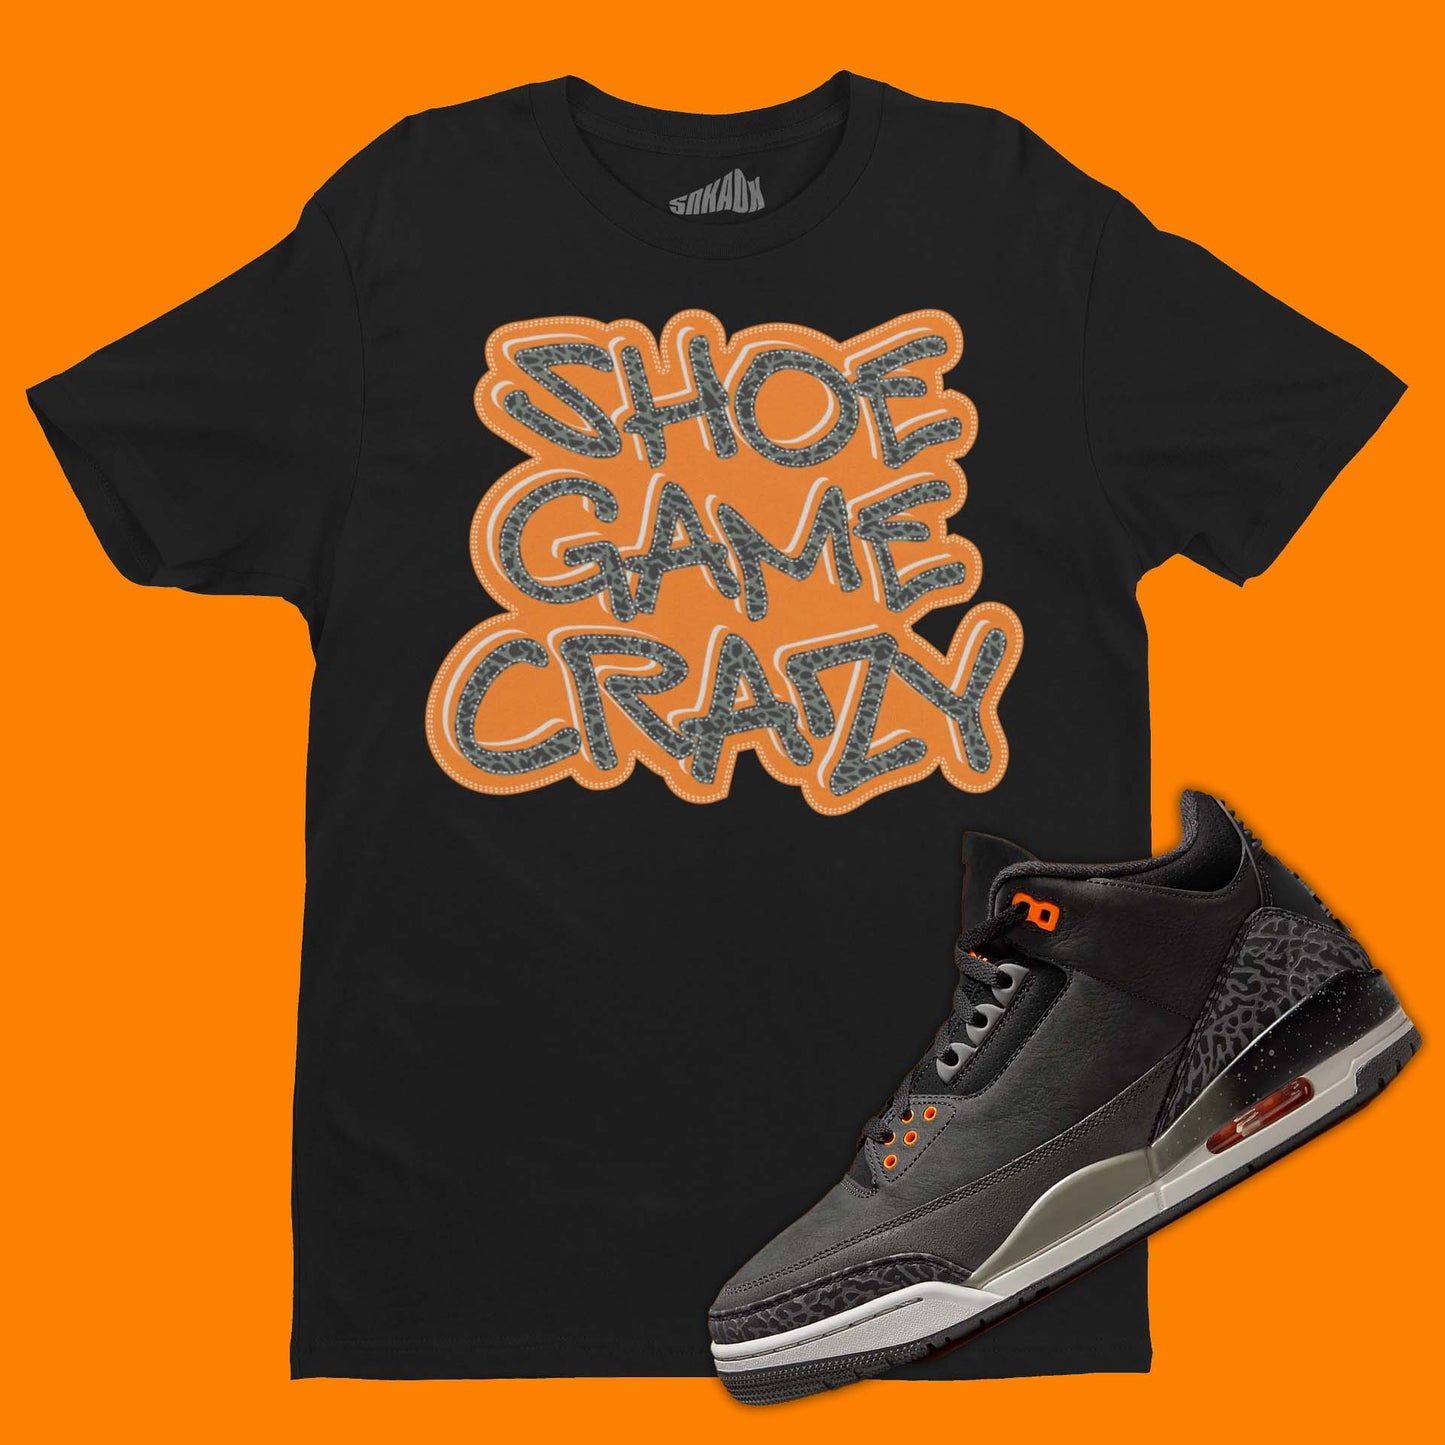 Shoe Game Crazy T-Shirt Matching Air Jordan 3 Fear Pack